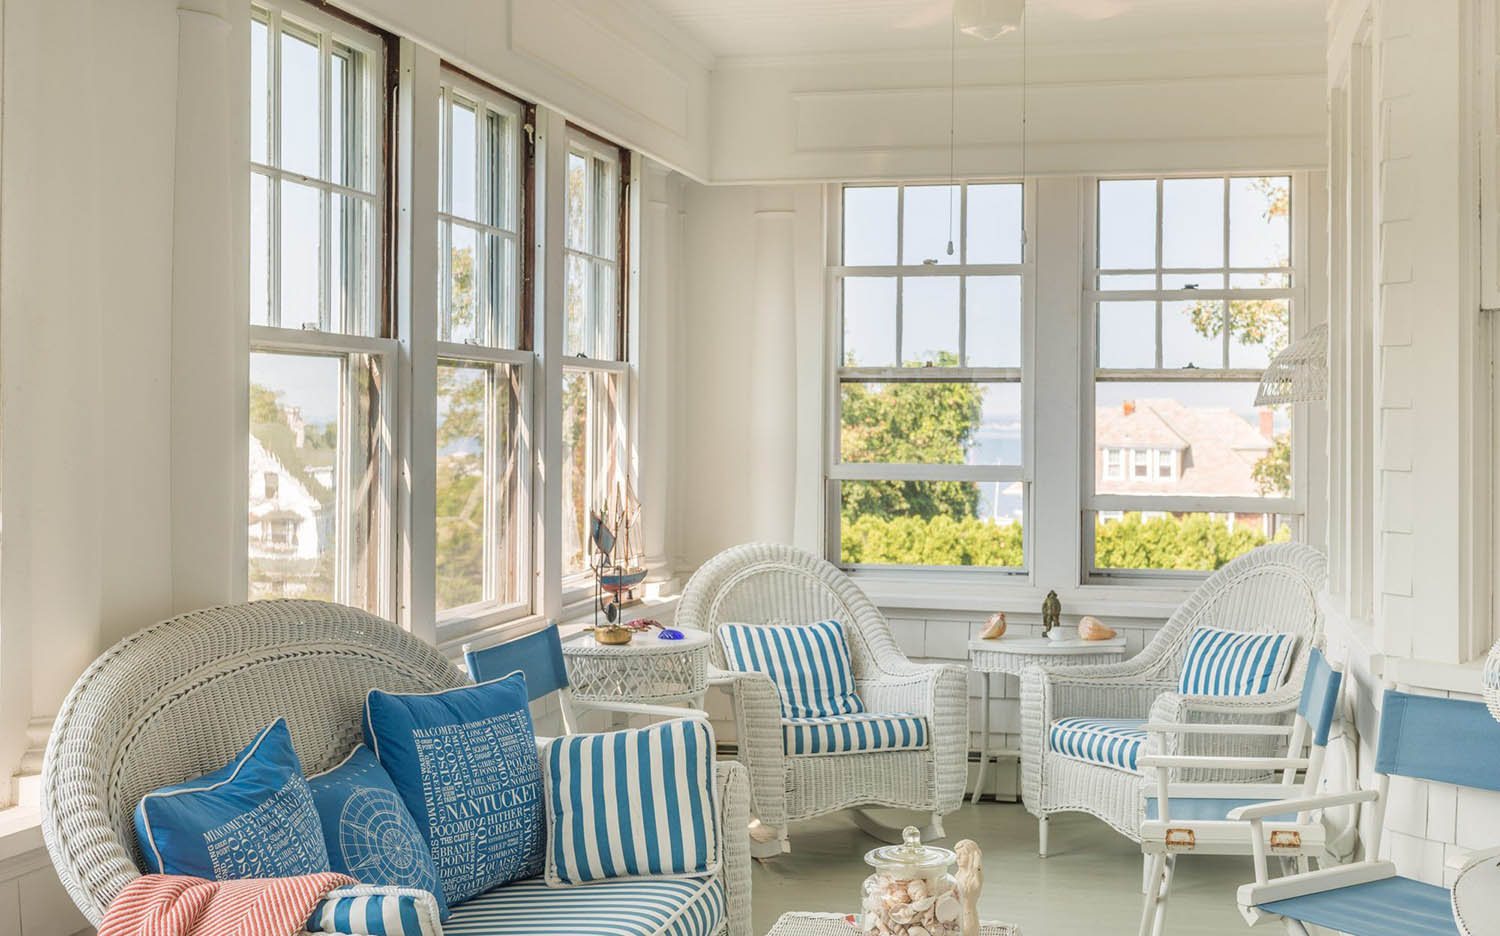 three season sunroom porch, white wicker chairs, blue cushions